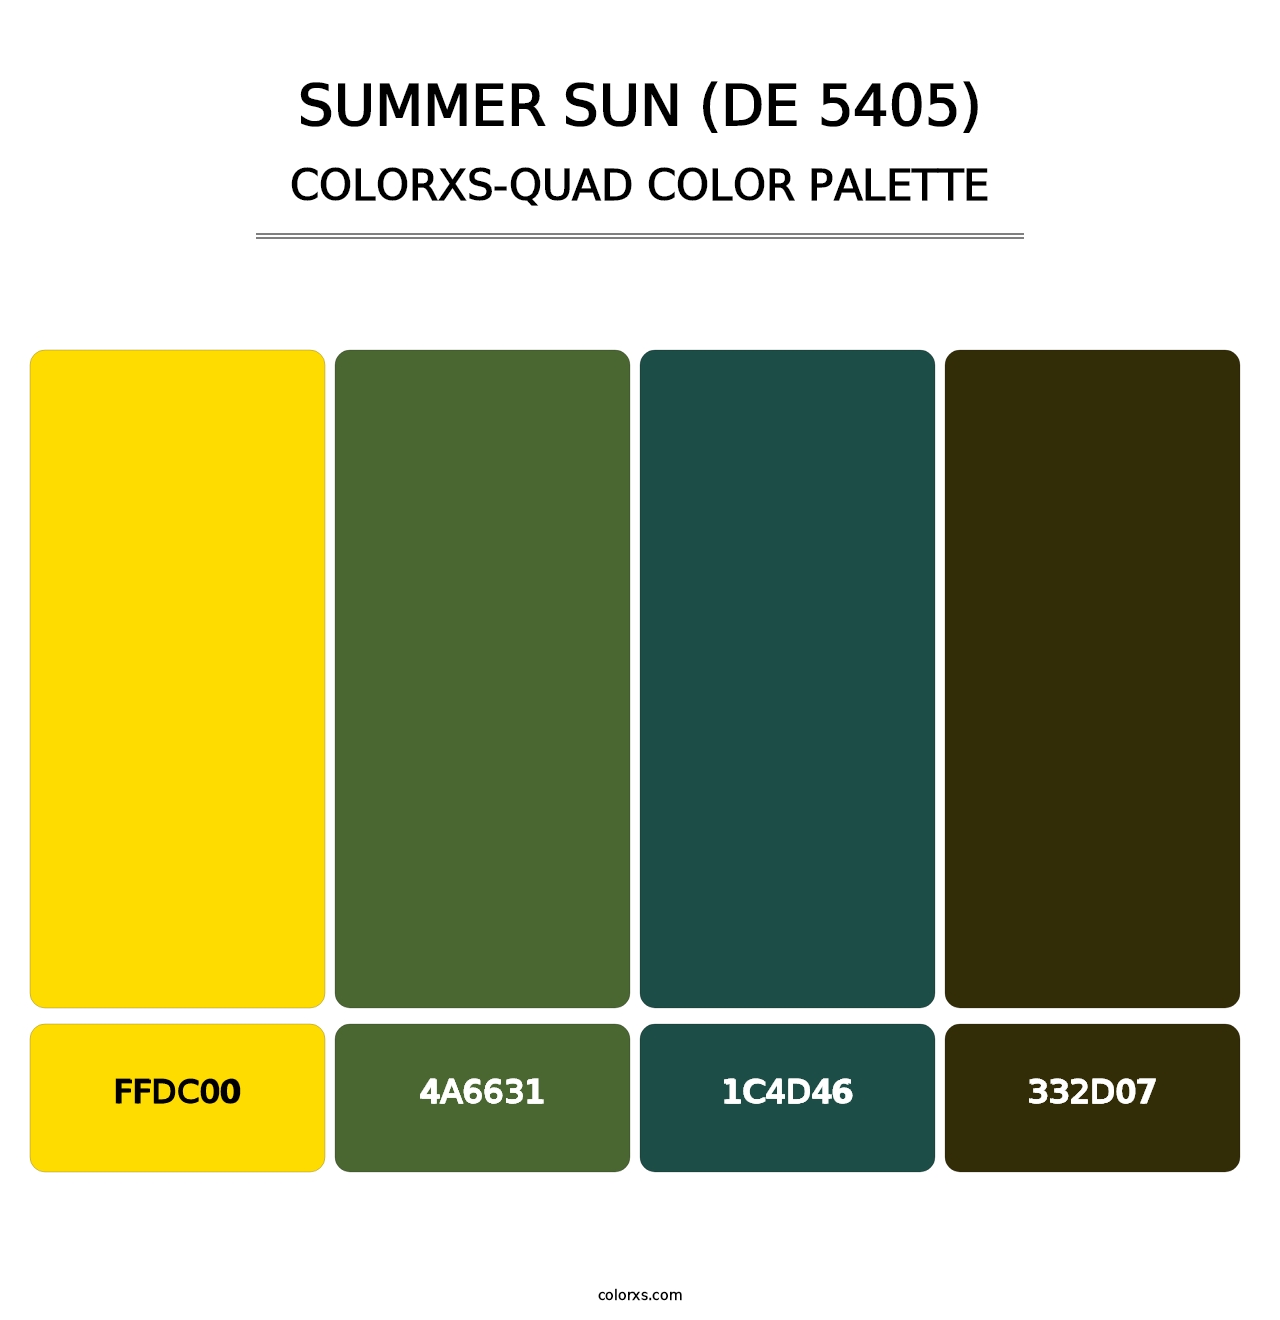 Summer Sun (DE 5405) - Colorxs Quad Palette